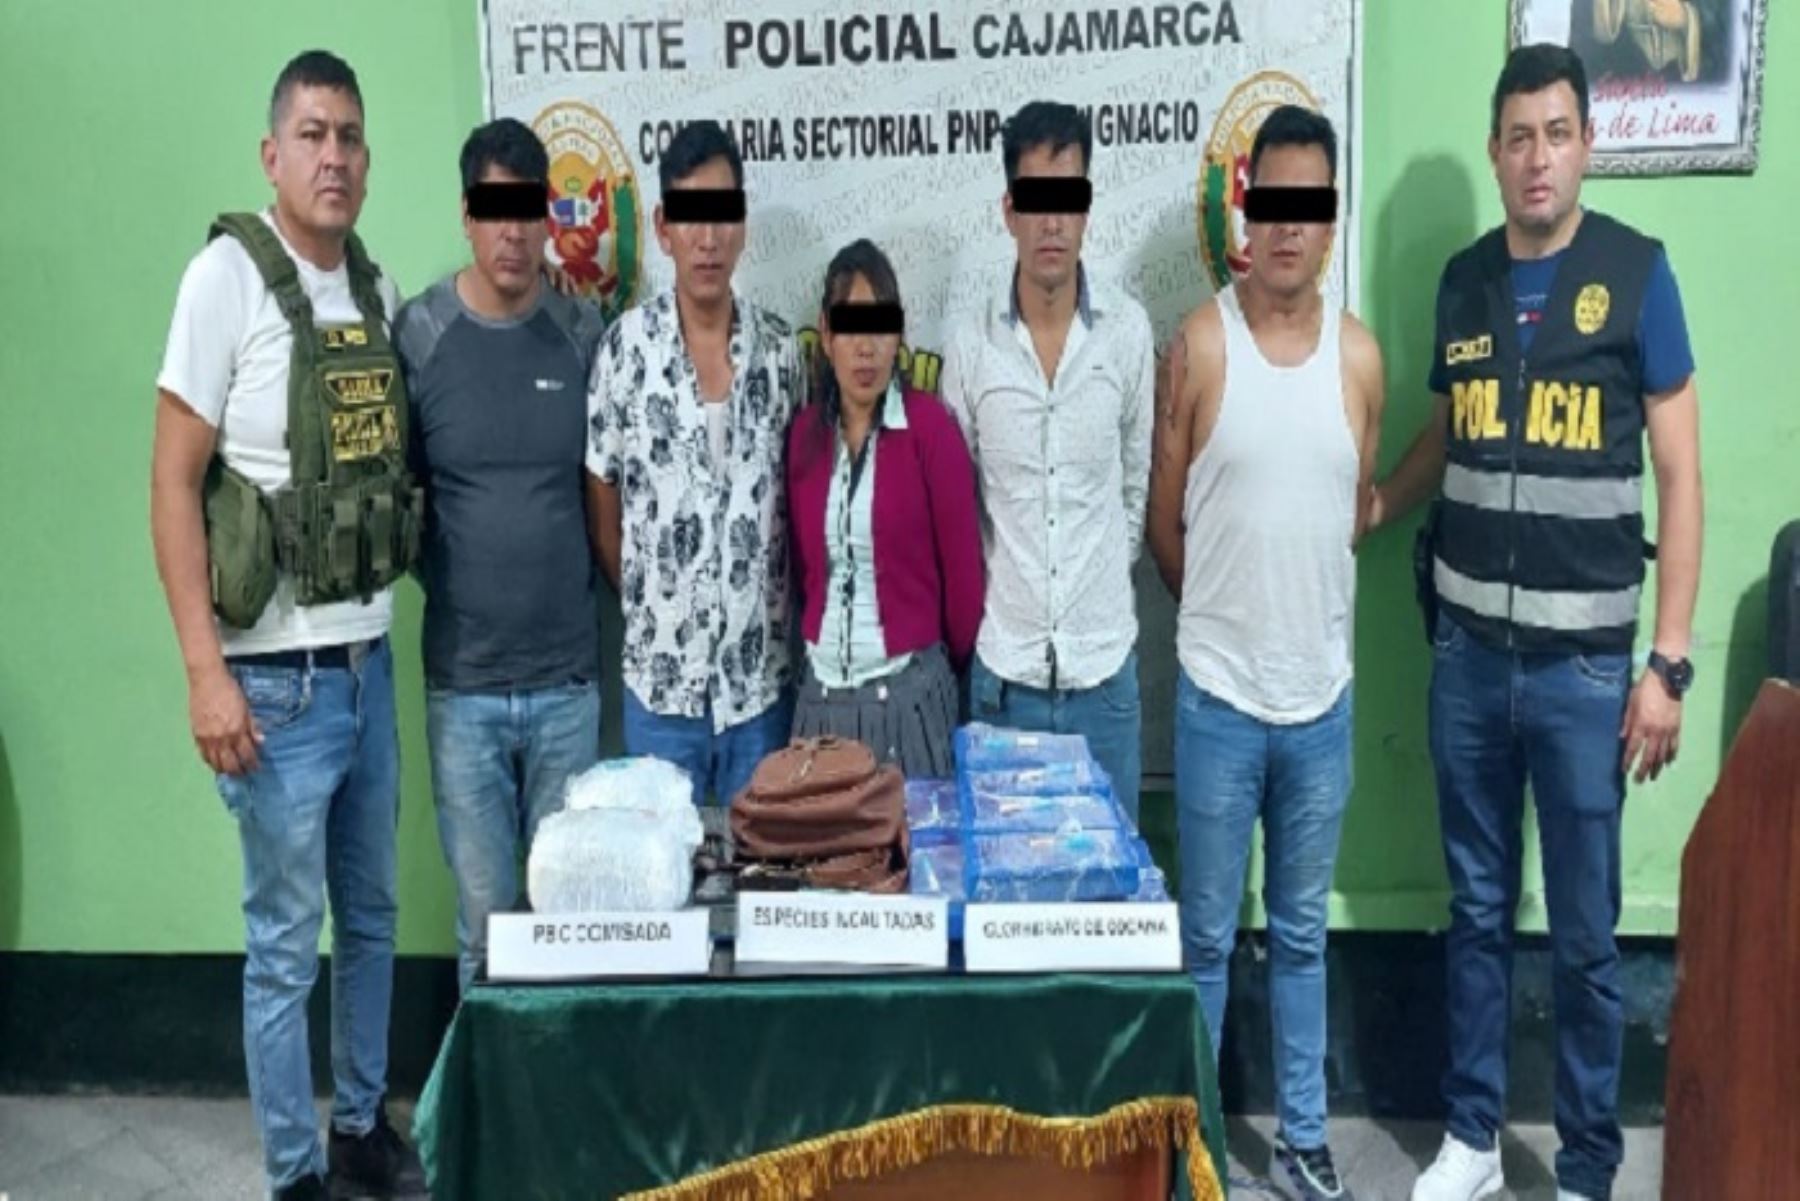 Malhechores fueron intervenidos en en el distrito y provincia cajamarquina de San Ignacio.ANDINA/Difusión